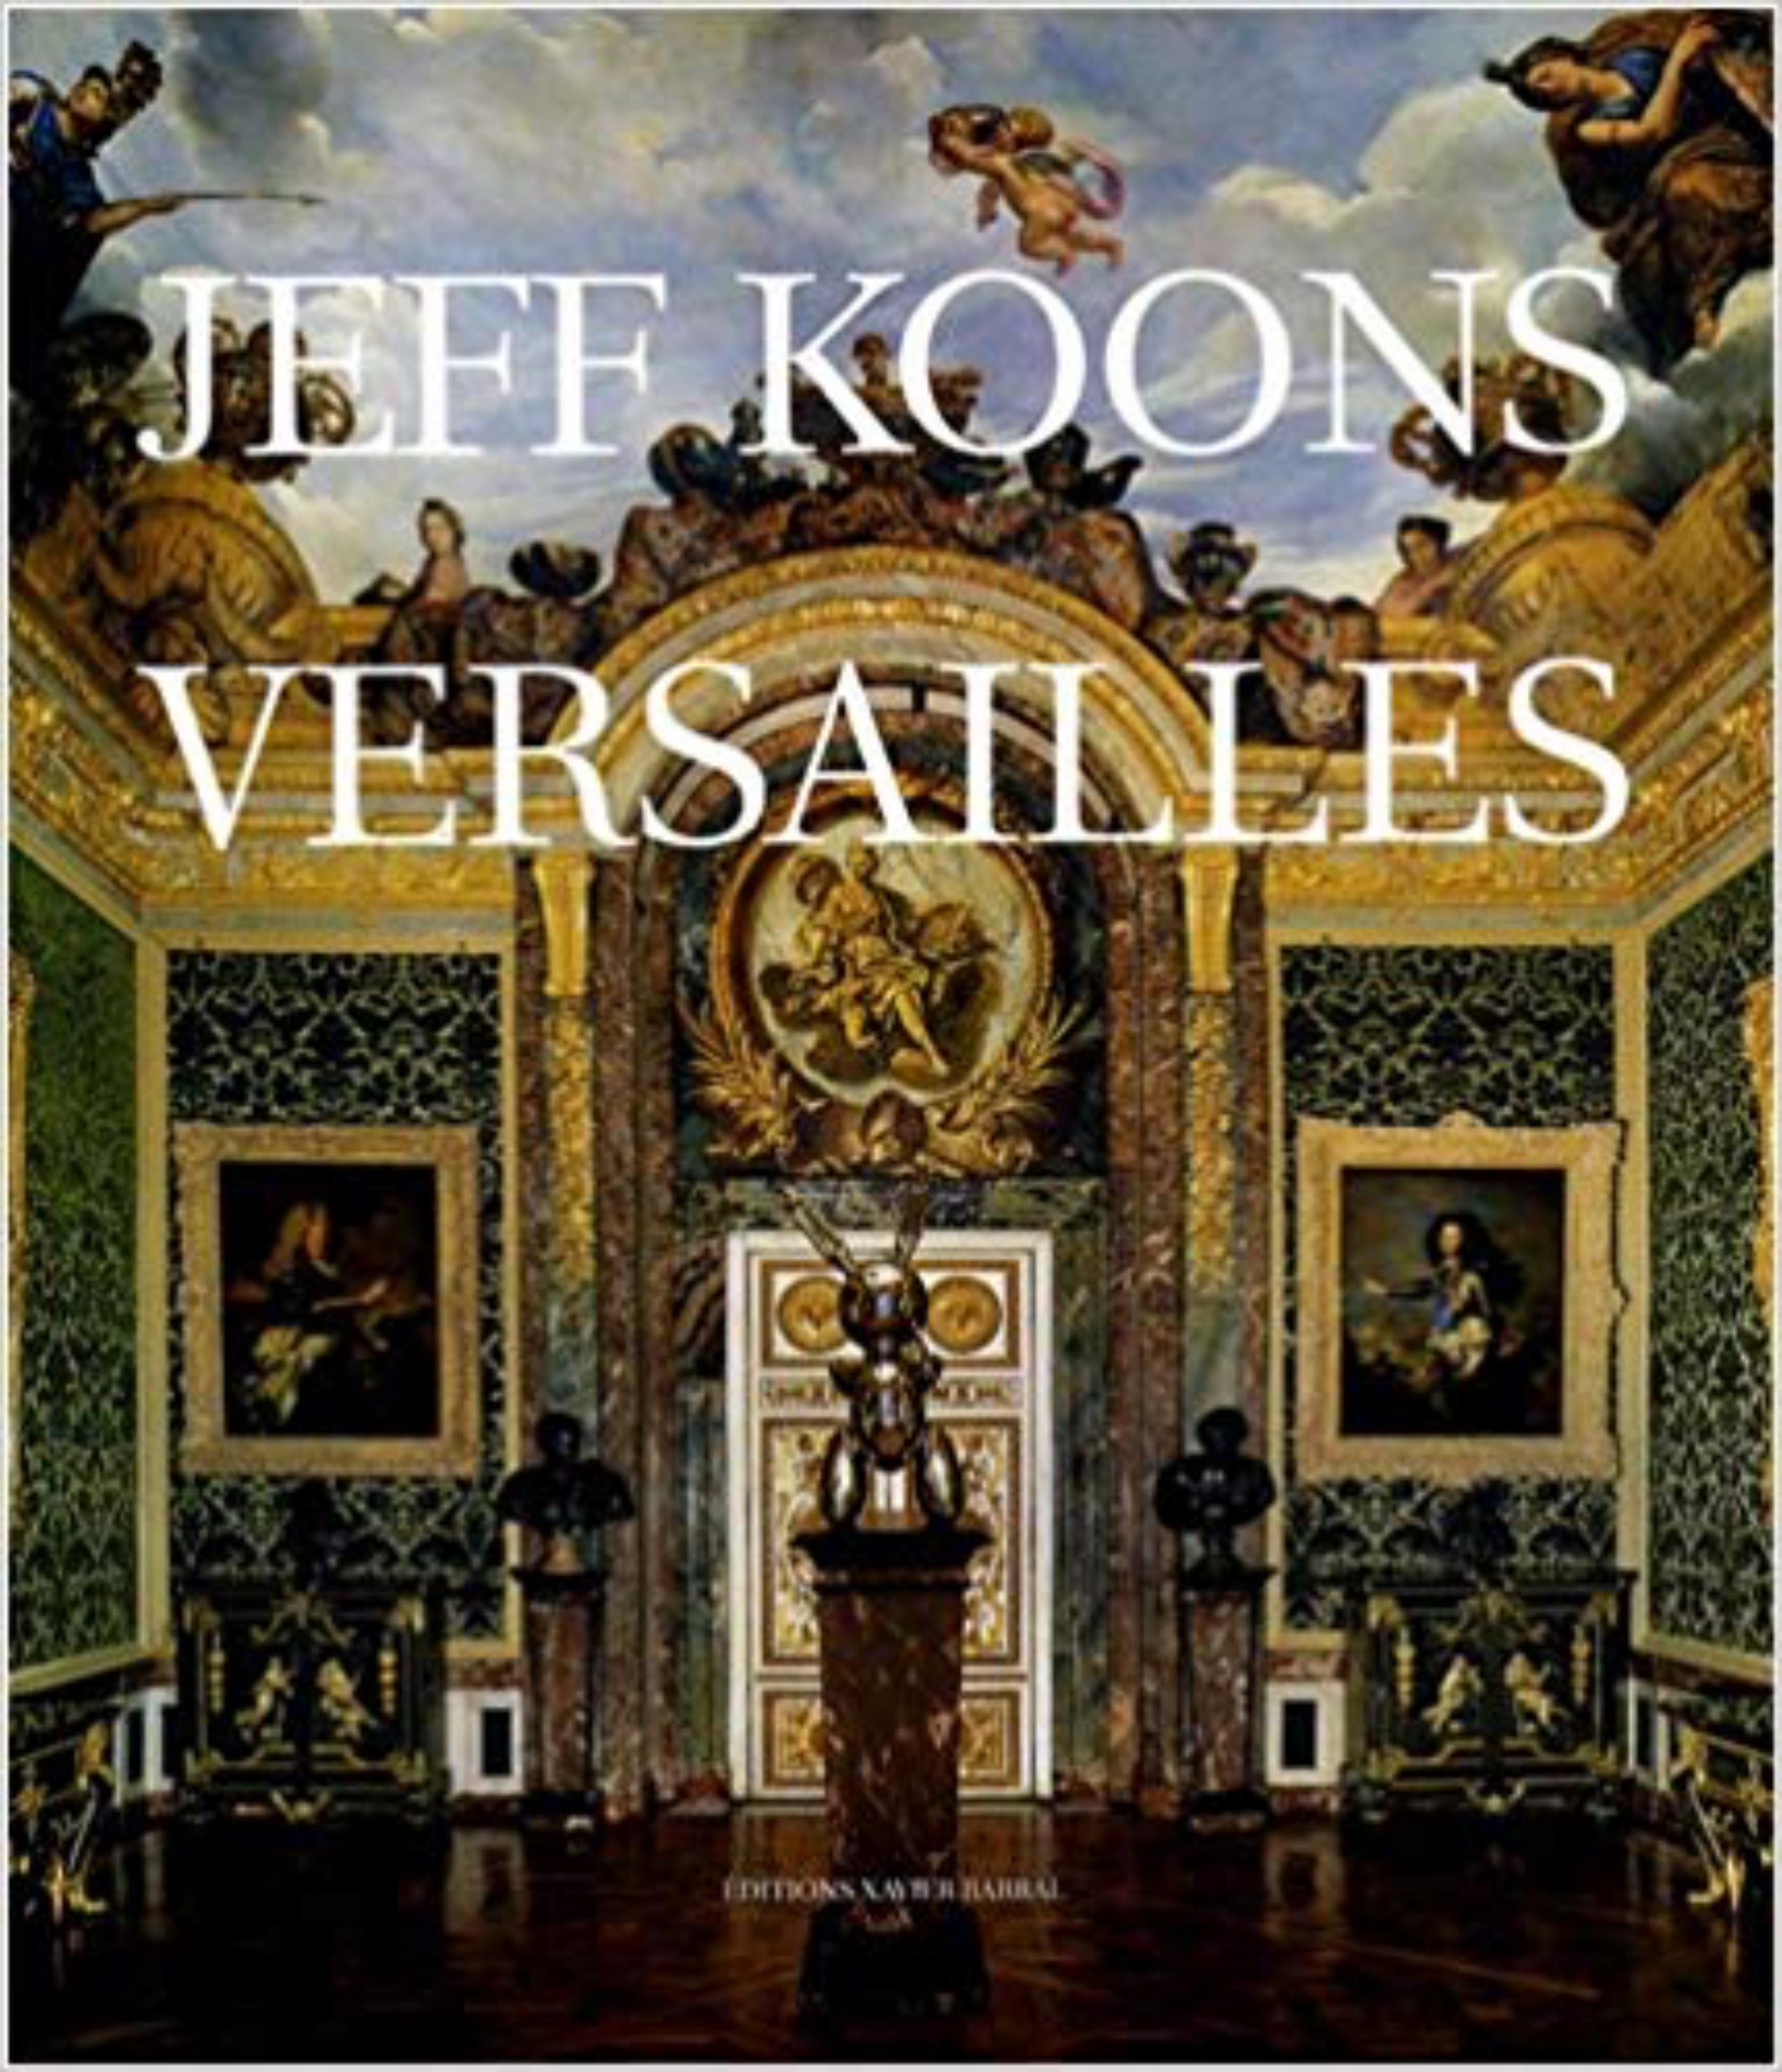 Fleurs et soleil dessin signé & daté dans Versailles monographie Pop art paysage - Contemporain Art par Jeff Koons